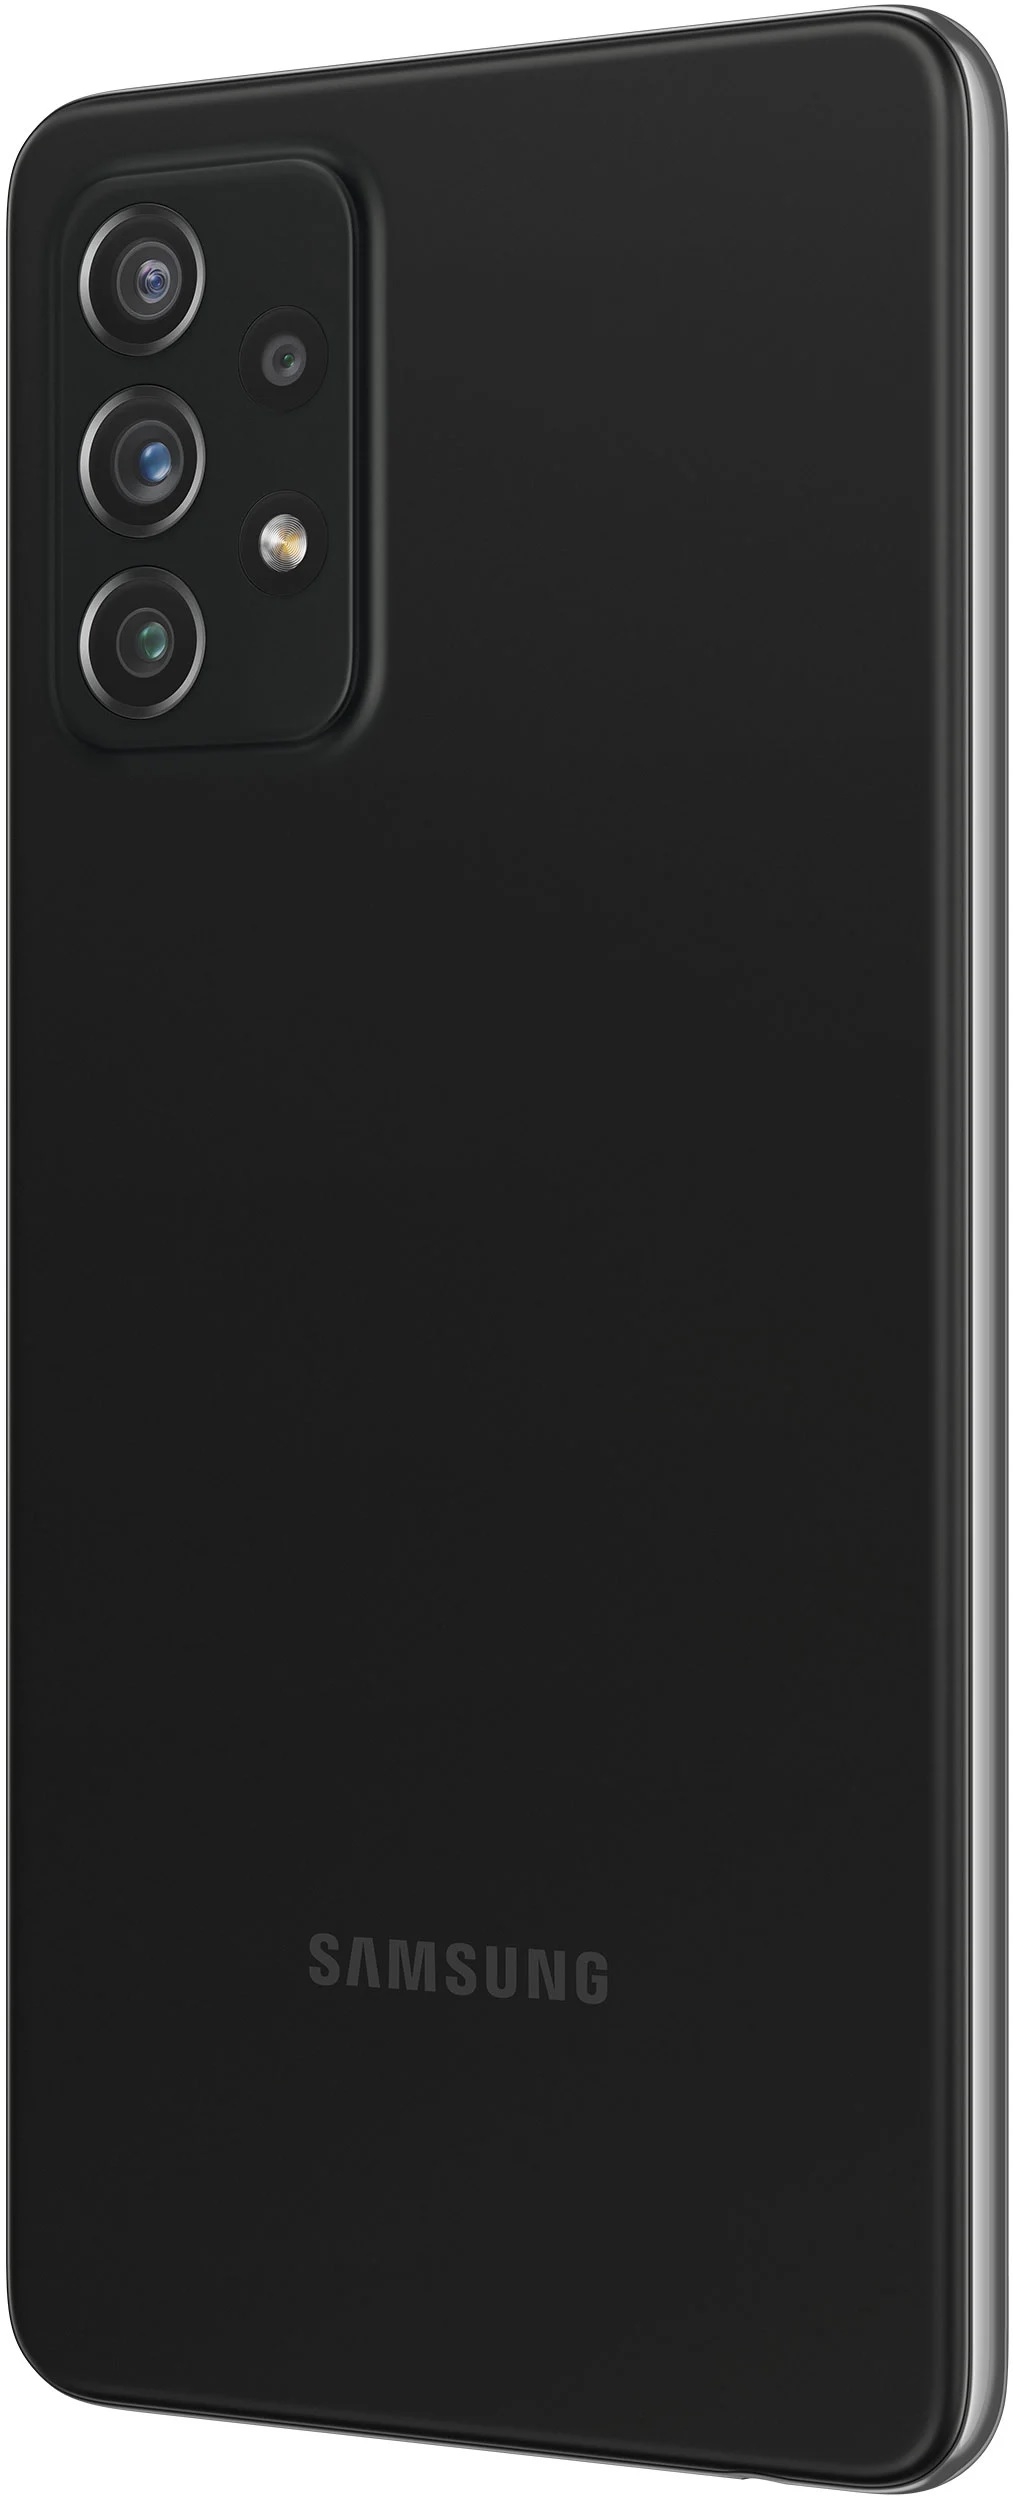 Samsung Galaxy A72 SM-A725F 6/128GB